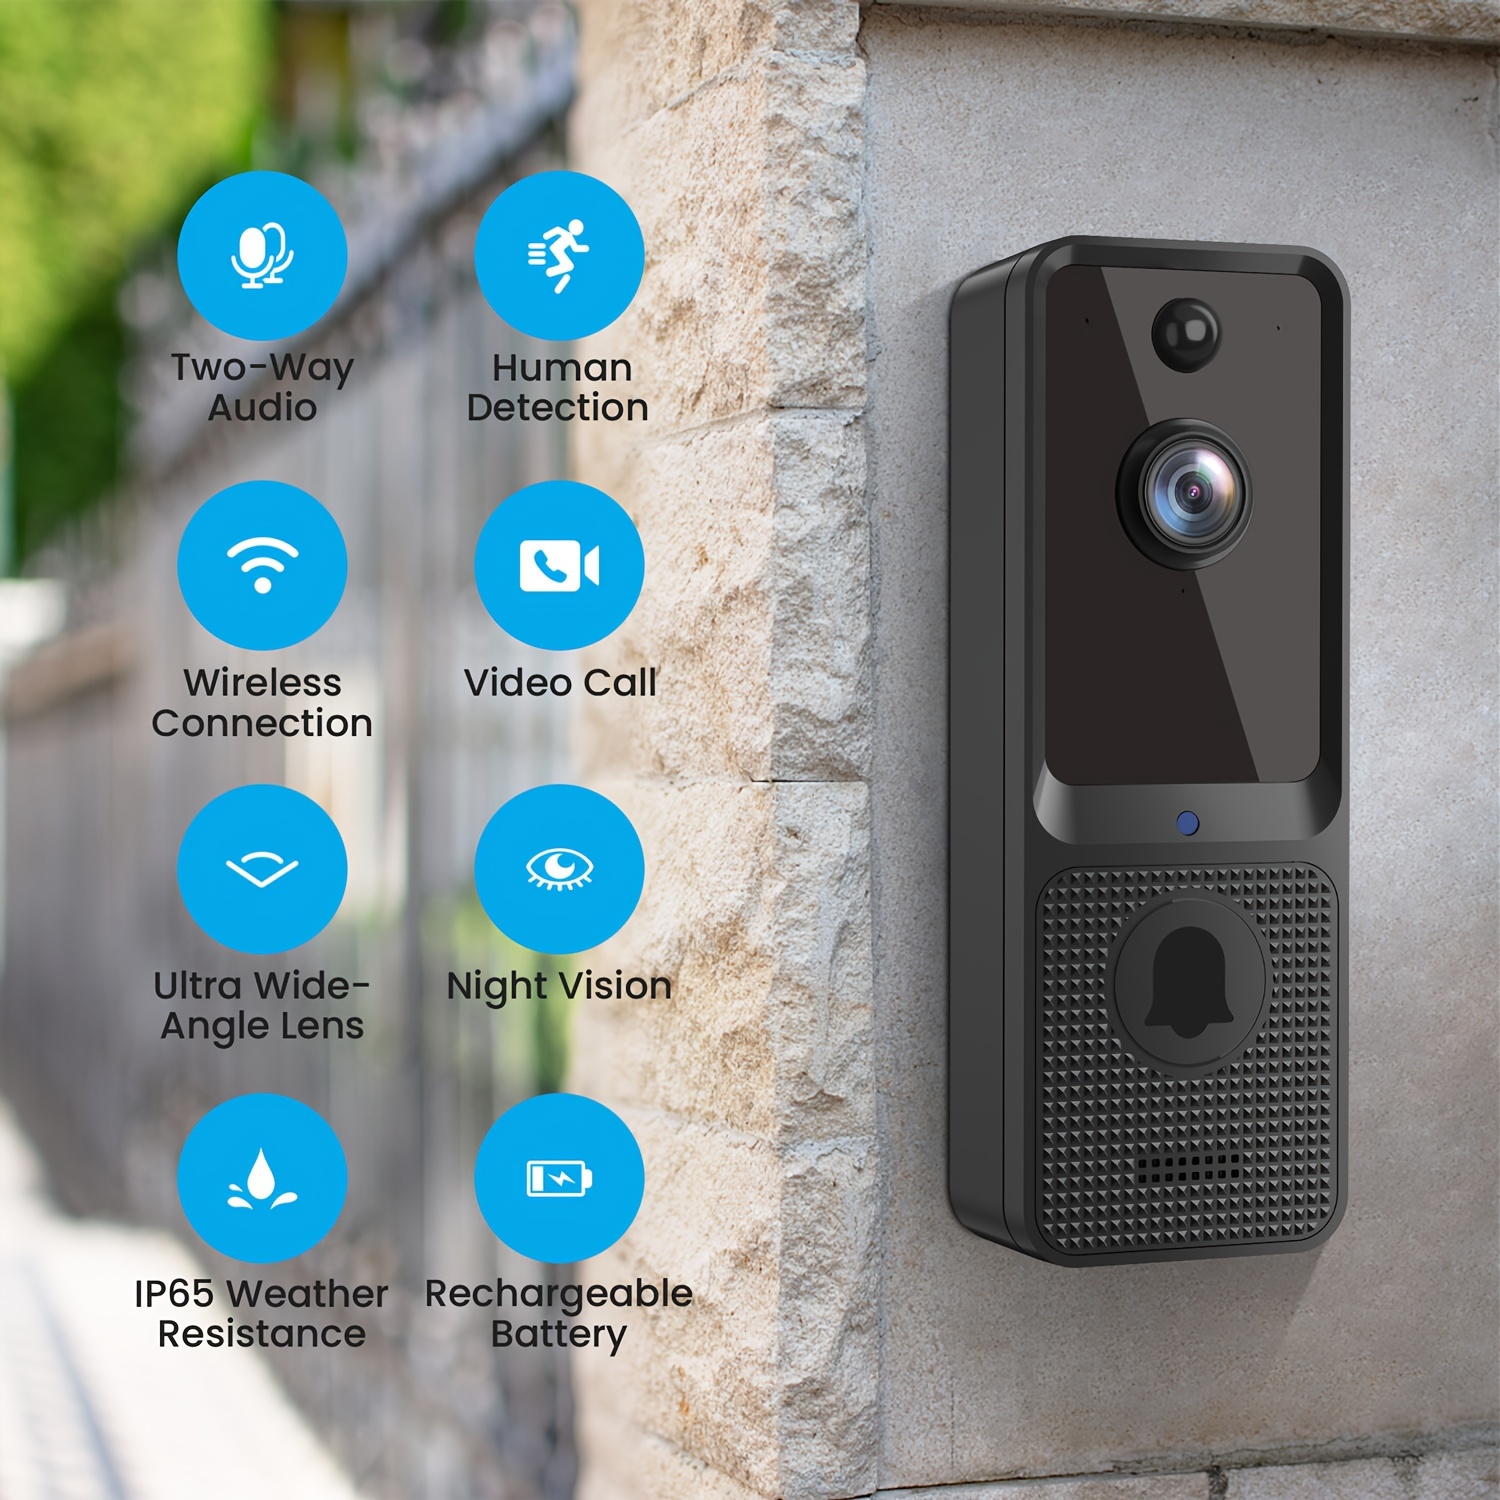 Mosunx Timbre inteligente inteligente inalámbrico remoto timbre de video  timbre visual inteligente cámara de video en tiempo real visión nocturna  WiFi